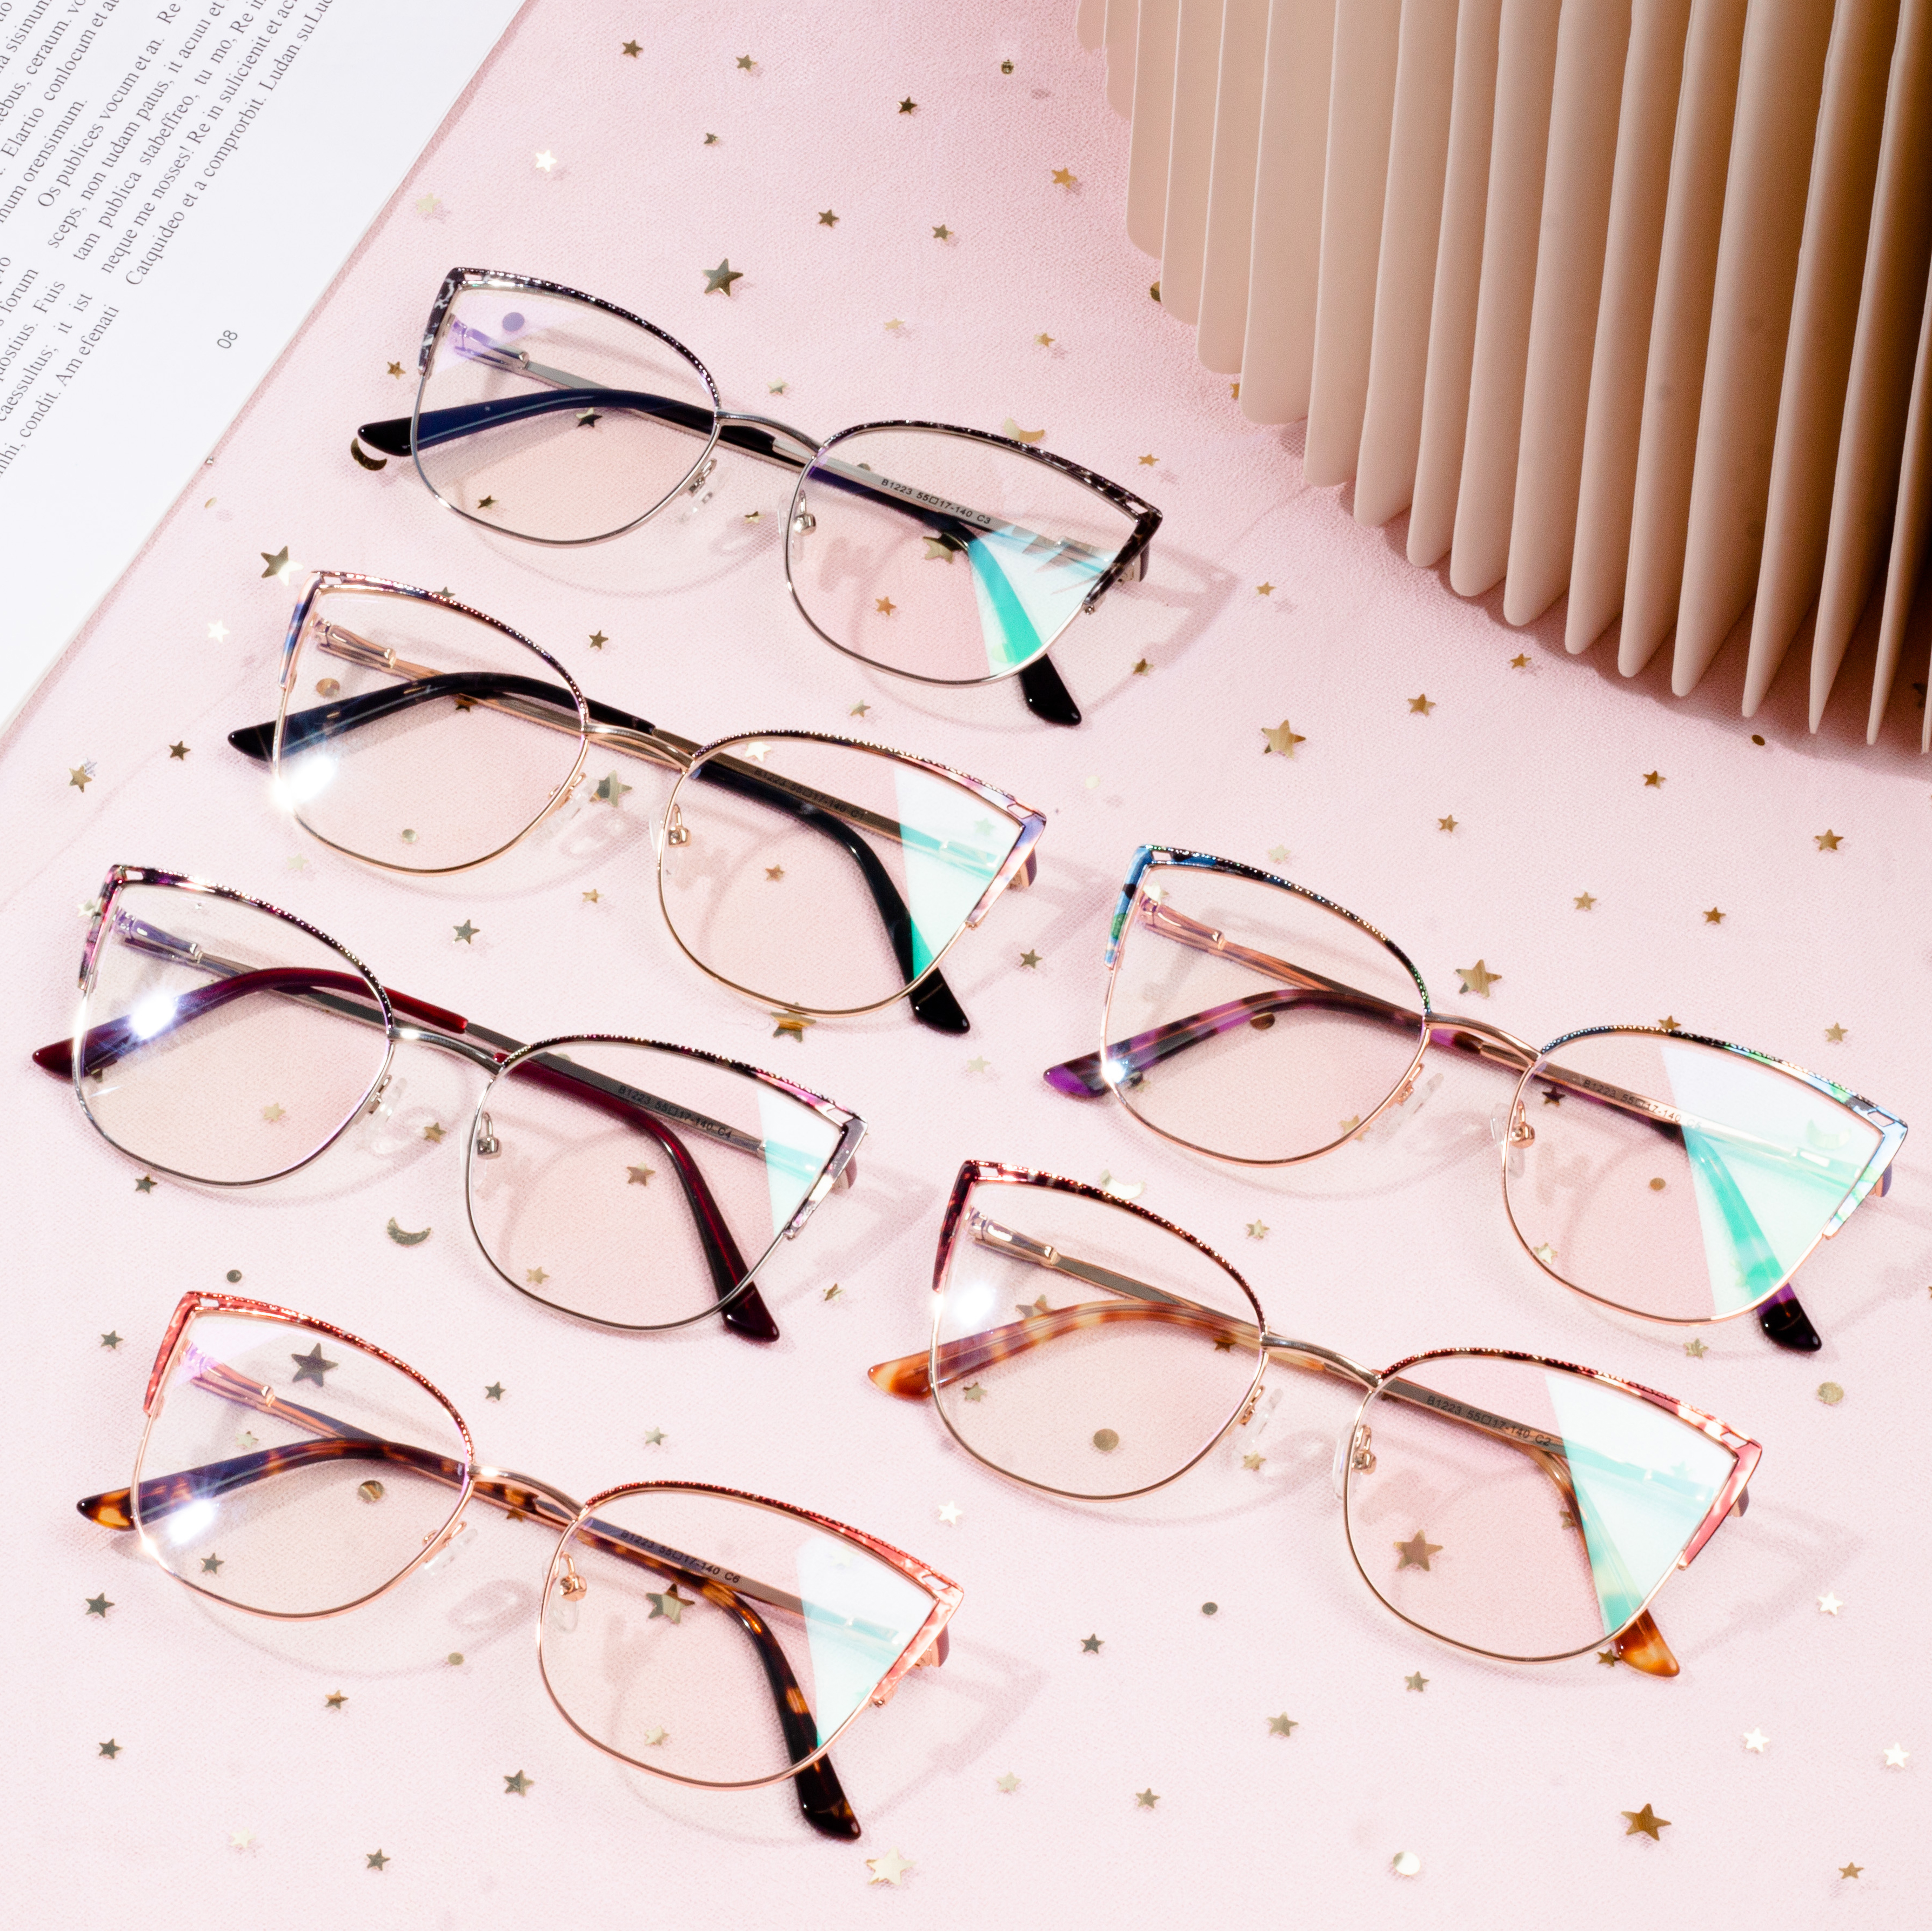 Lowest Price for Acetate Frames - Super cat style vintage eyeglasses frame optical – HJ EYEWEAR